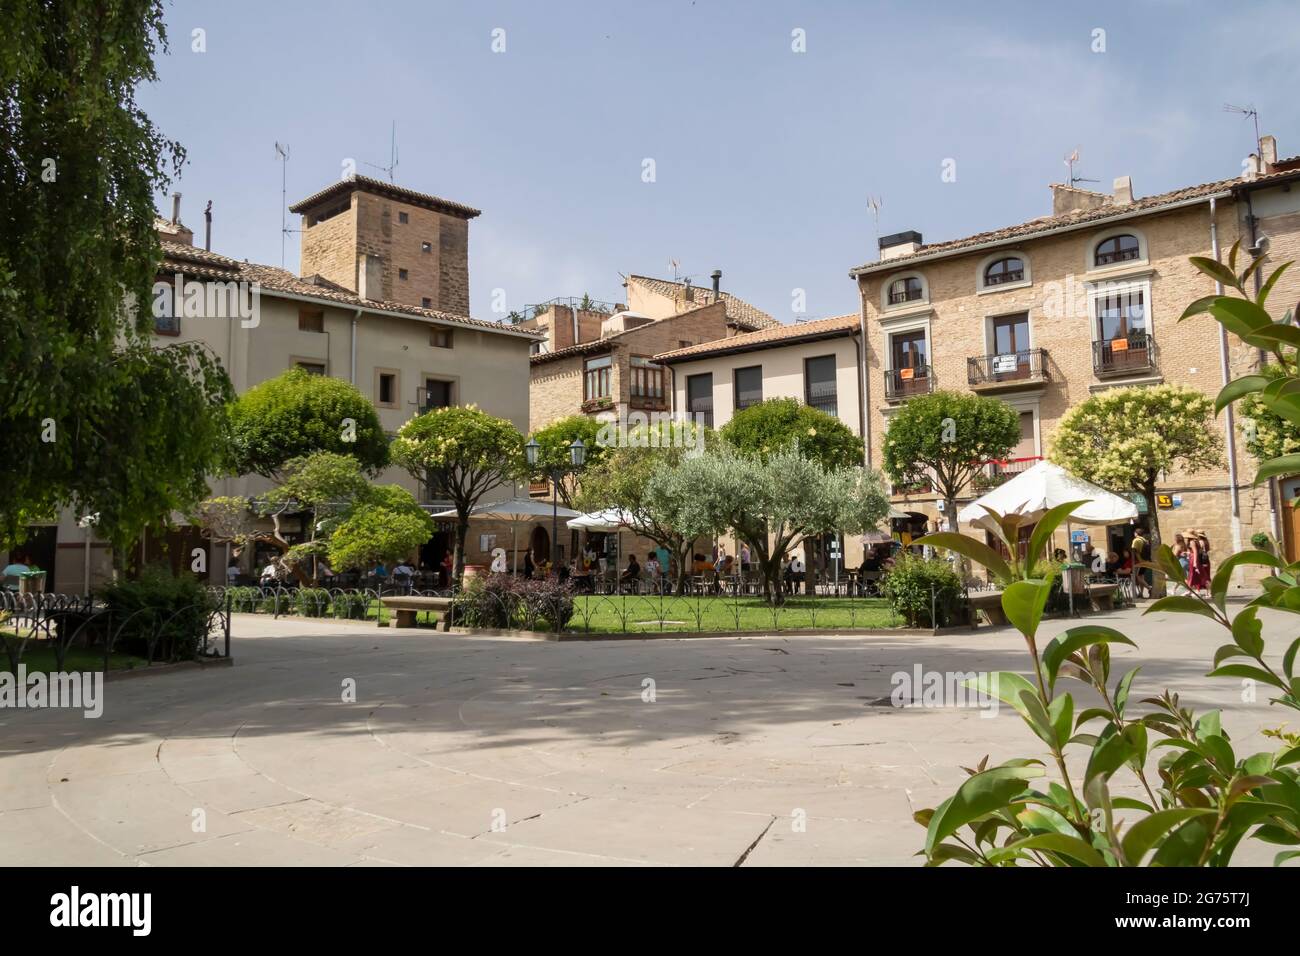 Olite es una hermosa ciudad medieval en la provincia de Navarra, España Foto de stock